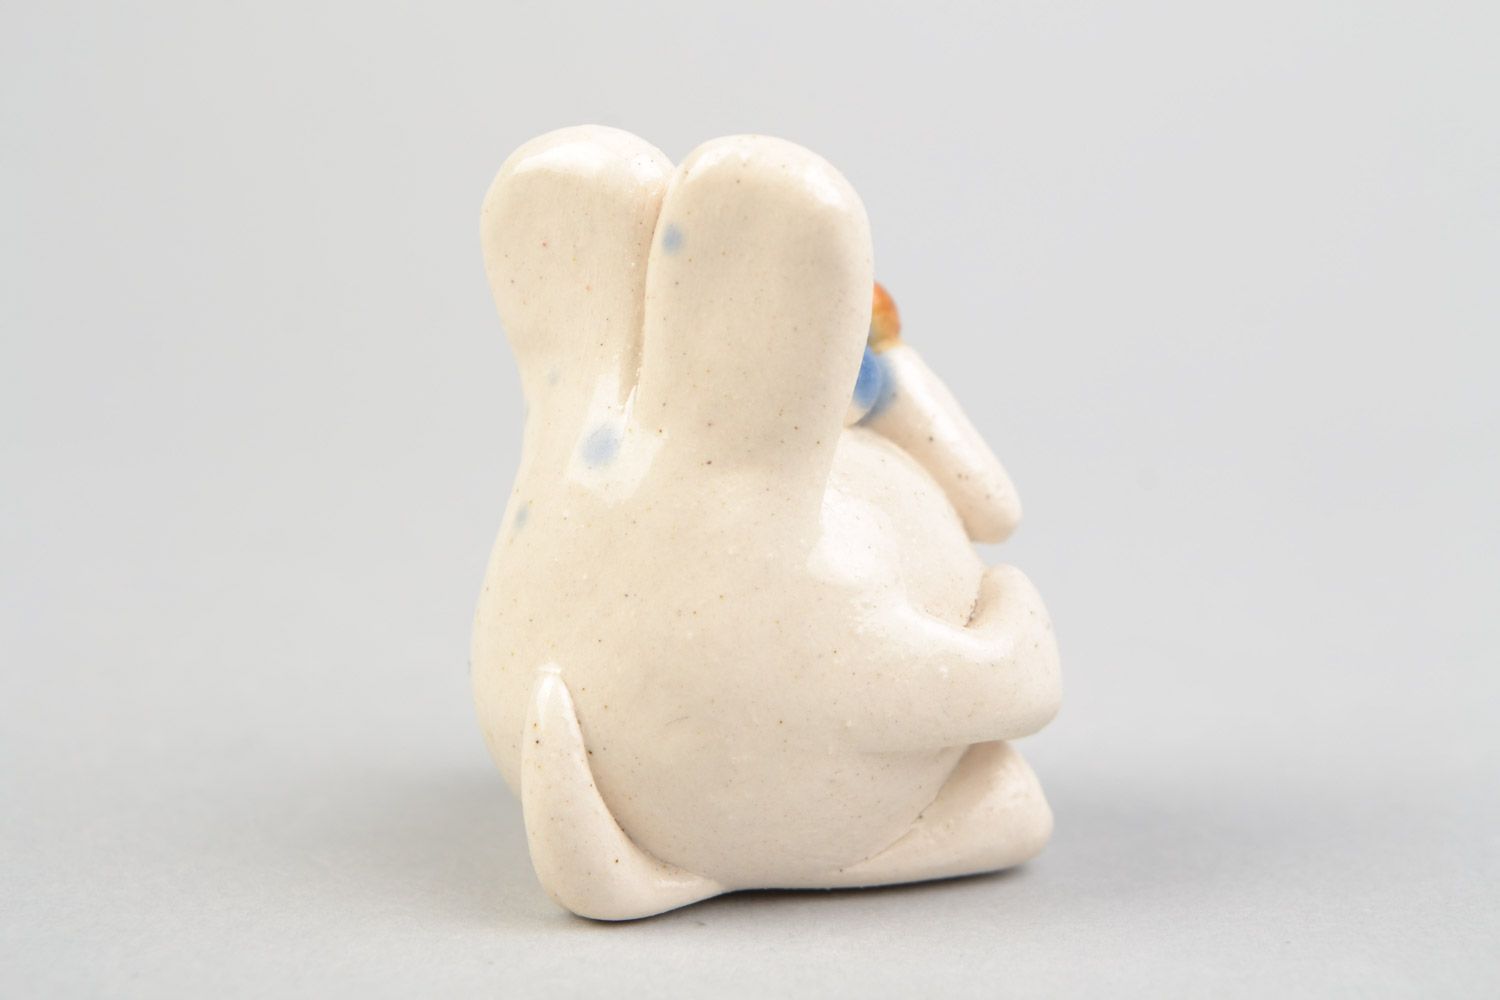 Авторская расписанная глазурью глиняная фигурка кролика малыша ручной работы фото 5